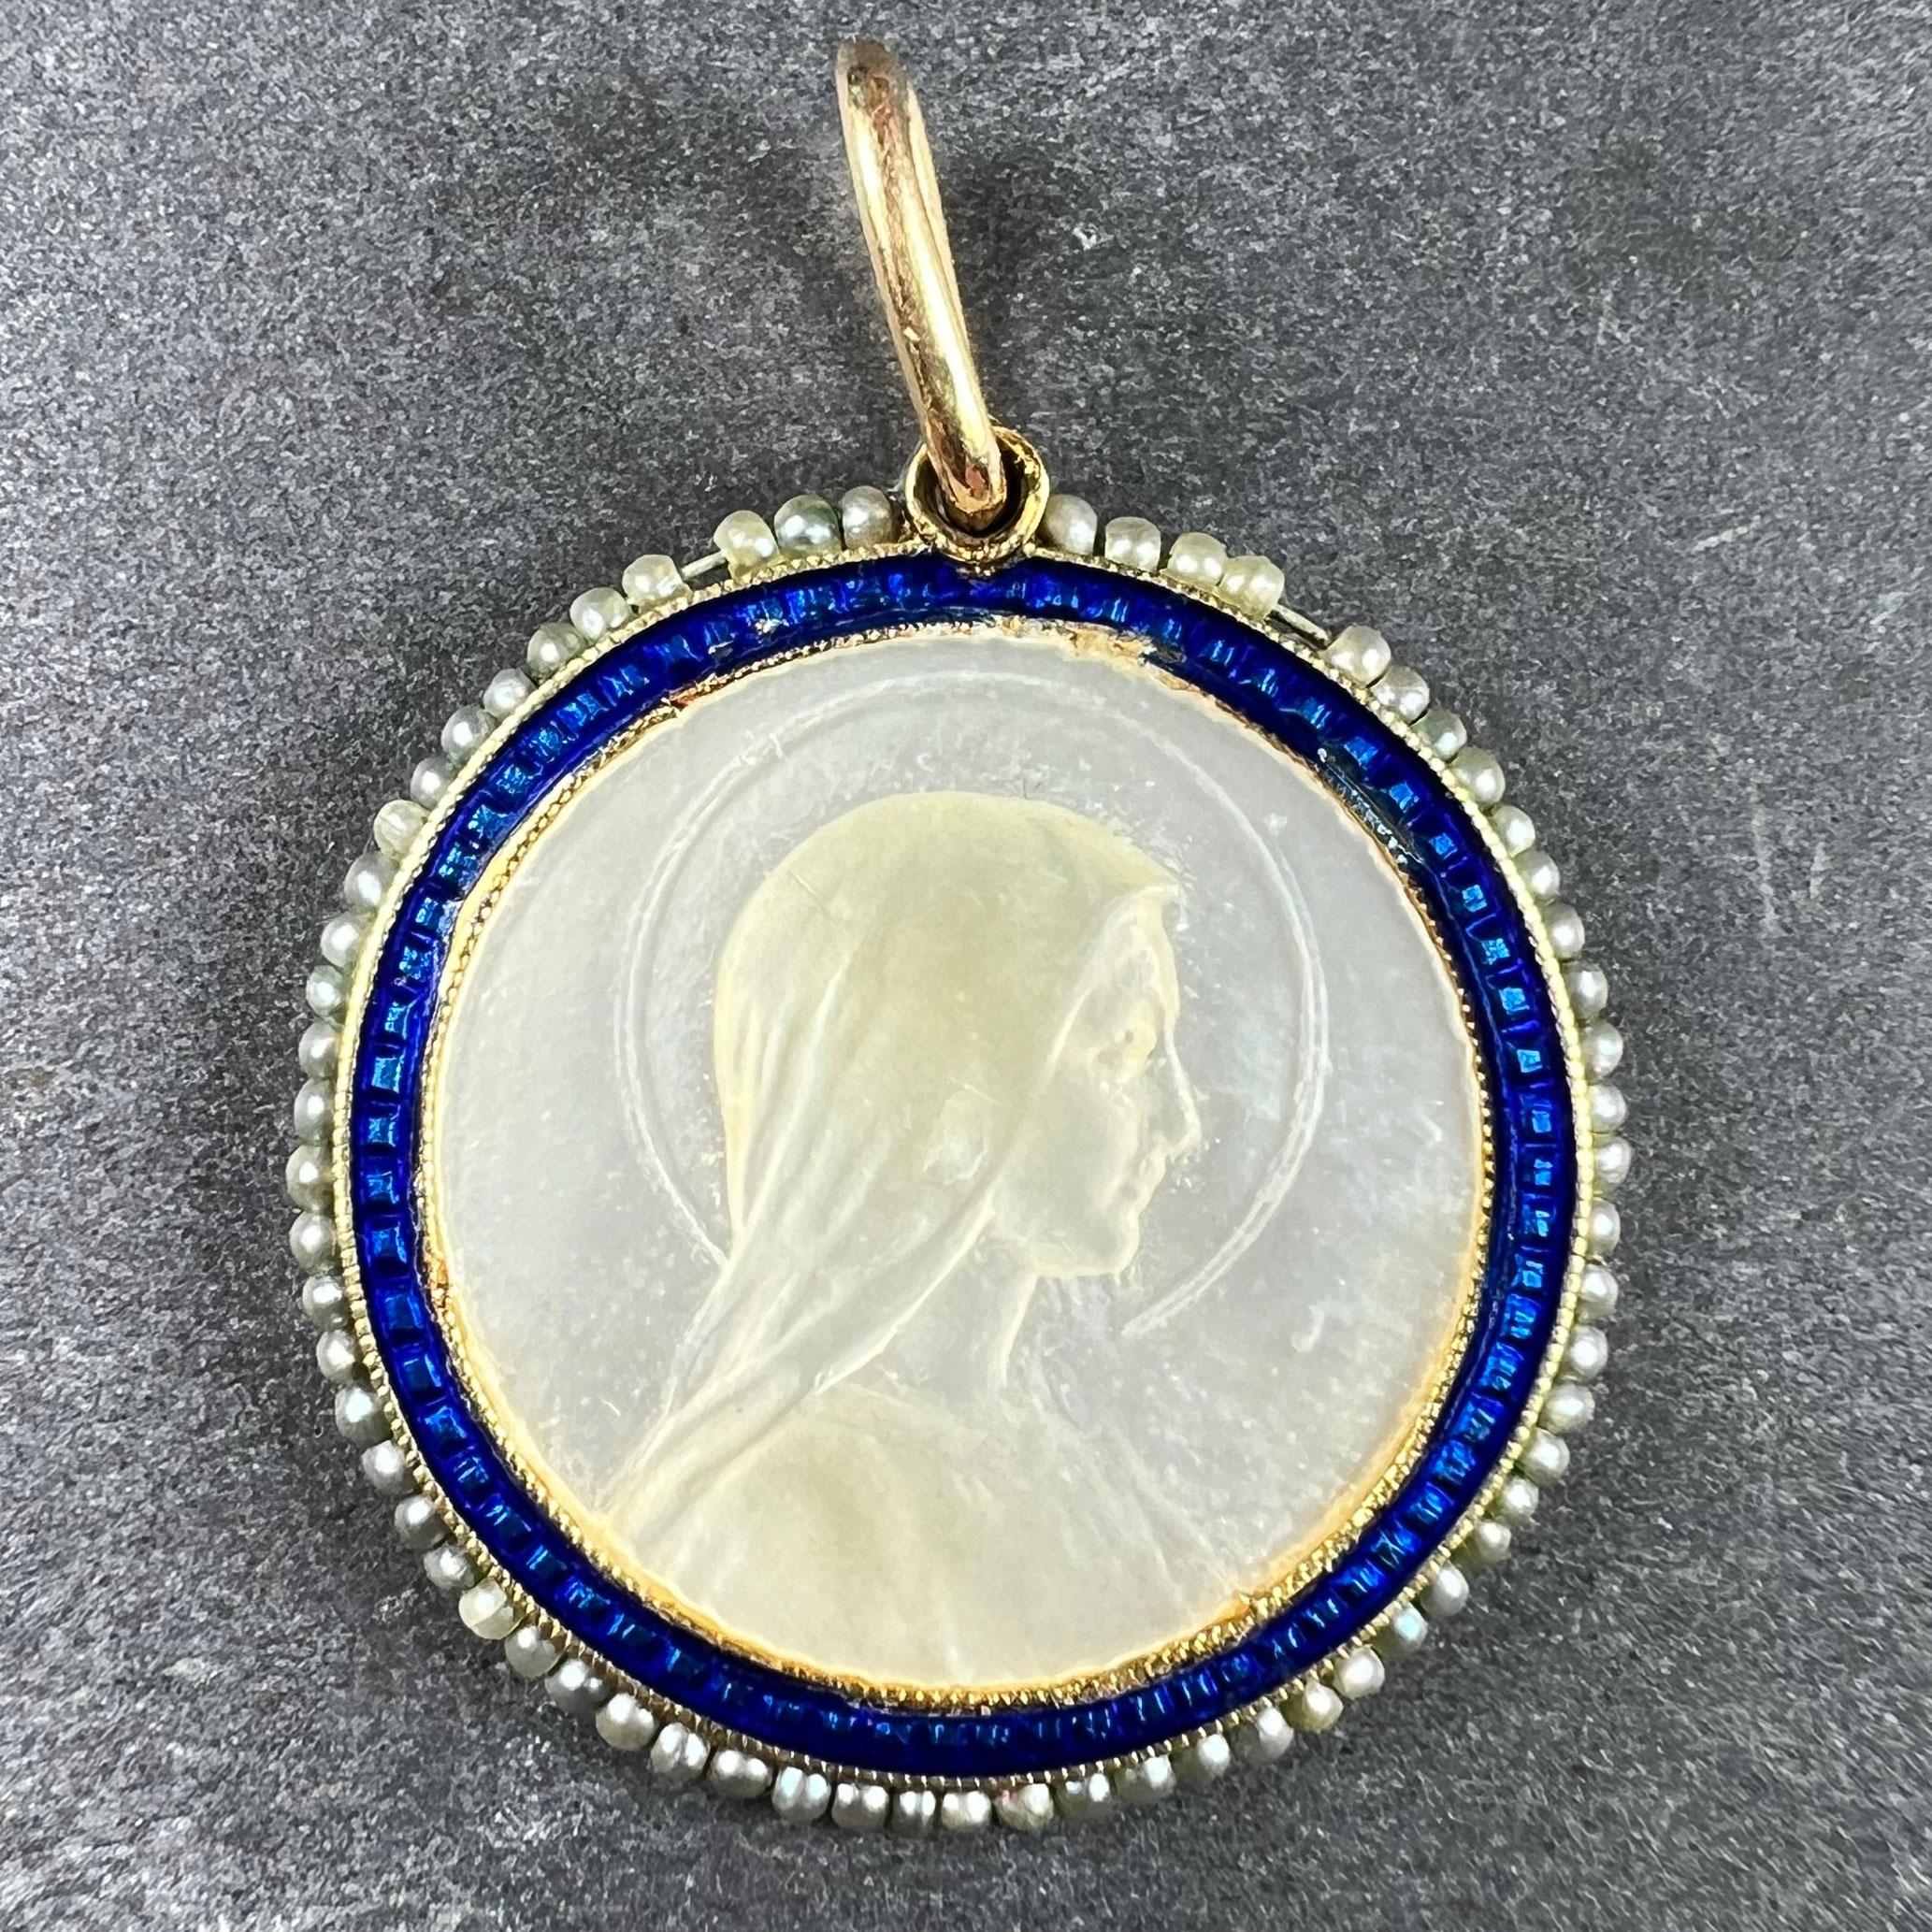 Ein Anhänger aus 18 Karat (18K) Gelbgold in Form einer Medaille aus Perlmutt, die die Jungfrau Maria in einem blauen Emaille-Rahmen darstellt, umgeben von 64 natürlichen Saatperlen. Ummarkiert, aber auf 18 Karat Gold getestet.

Abmessungen: 2,1 x 2